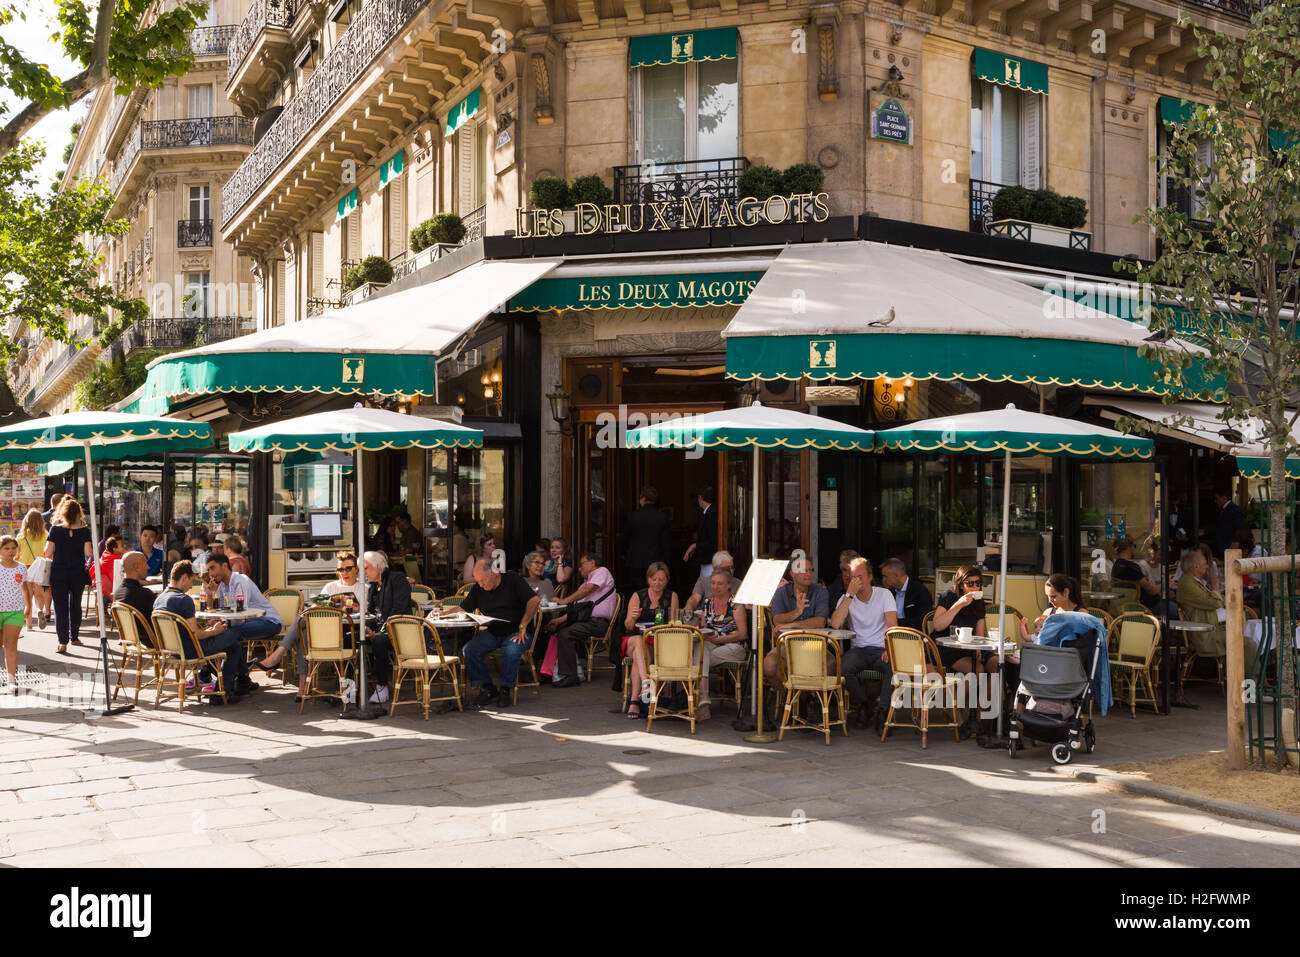 Patrons sit outside the Les Deux Magots café in Saint-Germain-des-Prés, Paris, France. Stock Photo